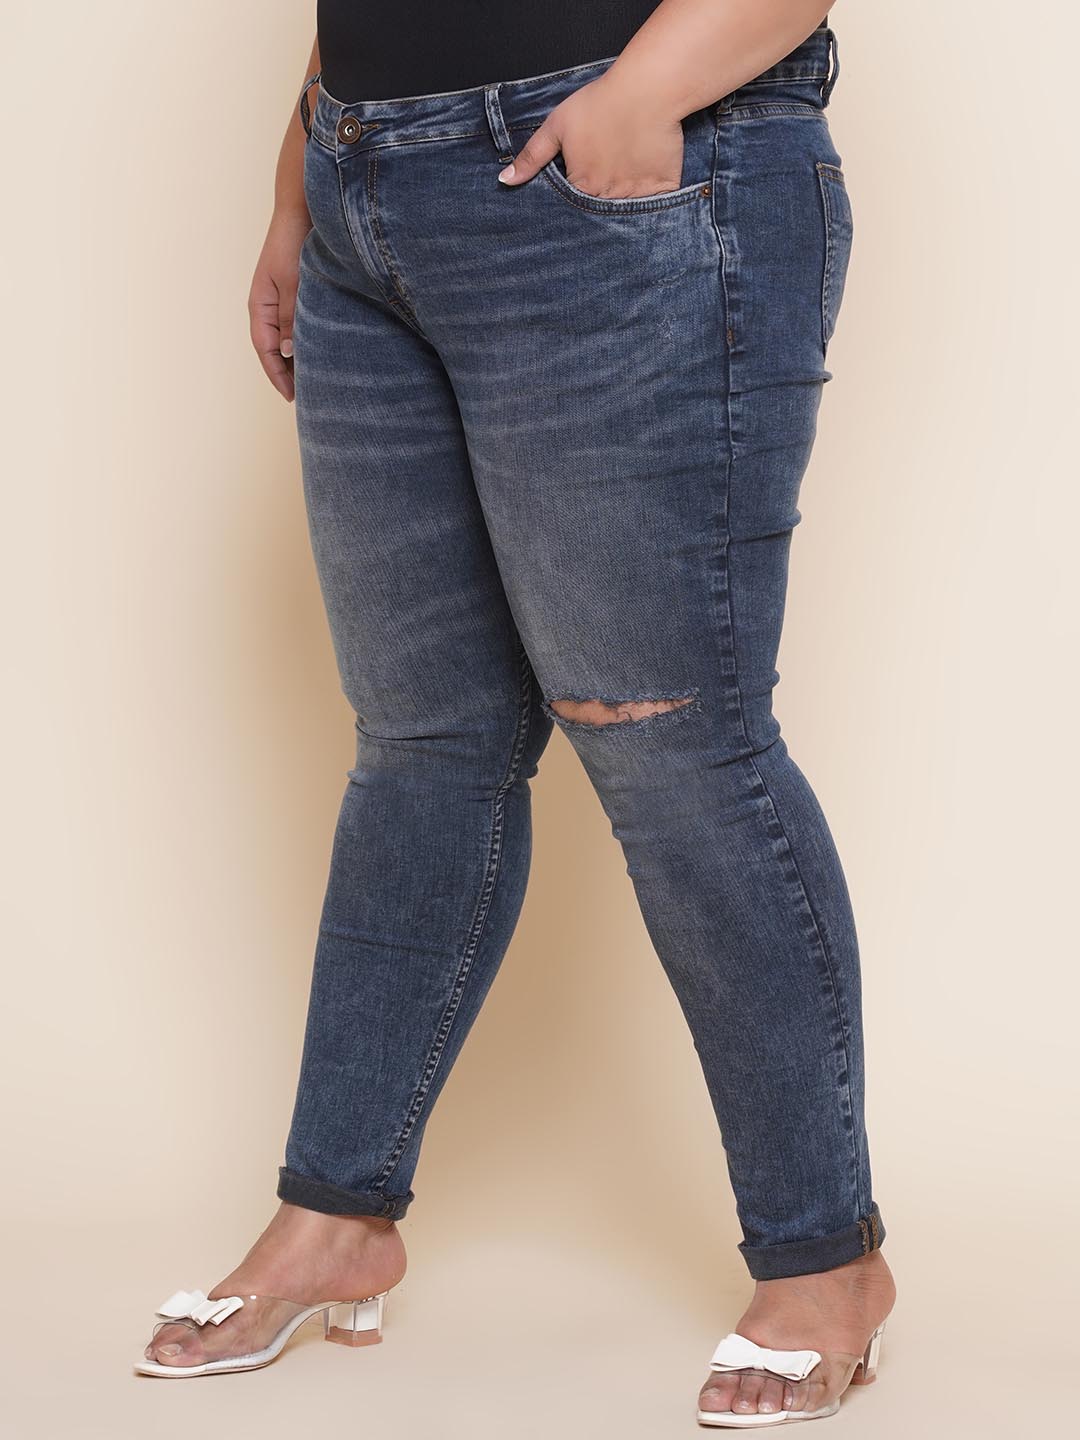 bottomwear_kiaahvi/jeans/KIJ6005/kij6005-4.jpg